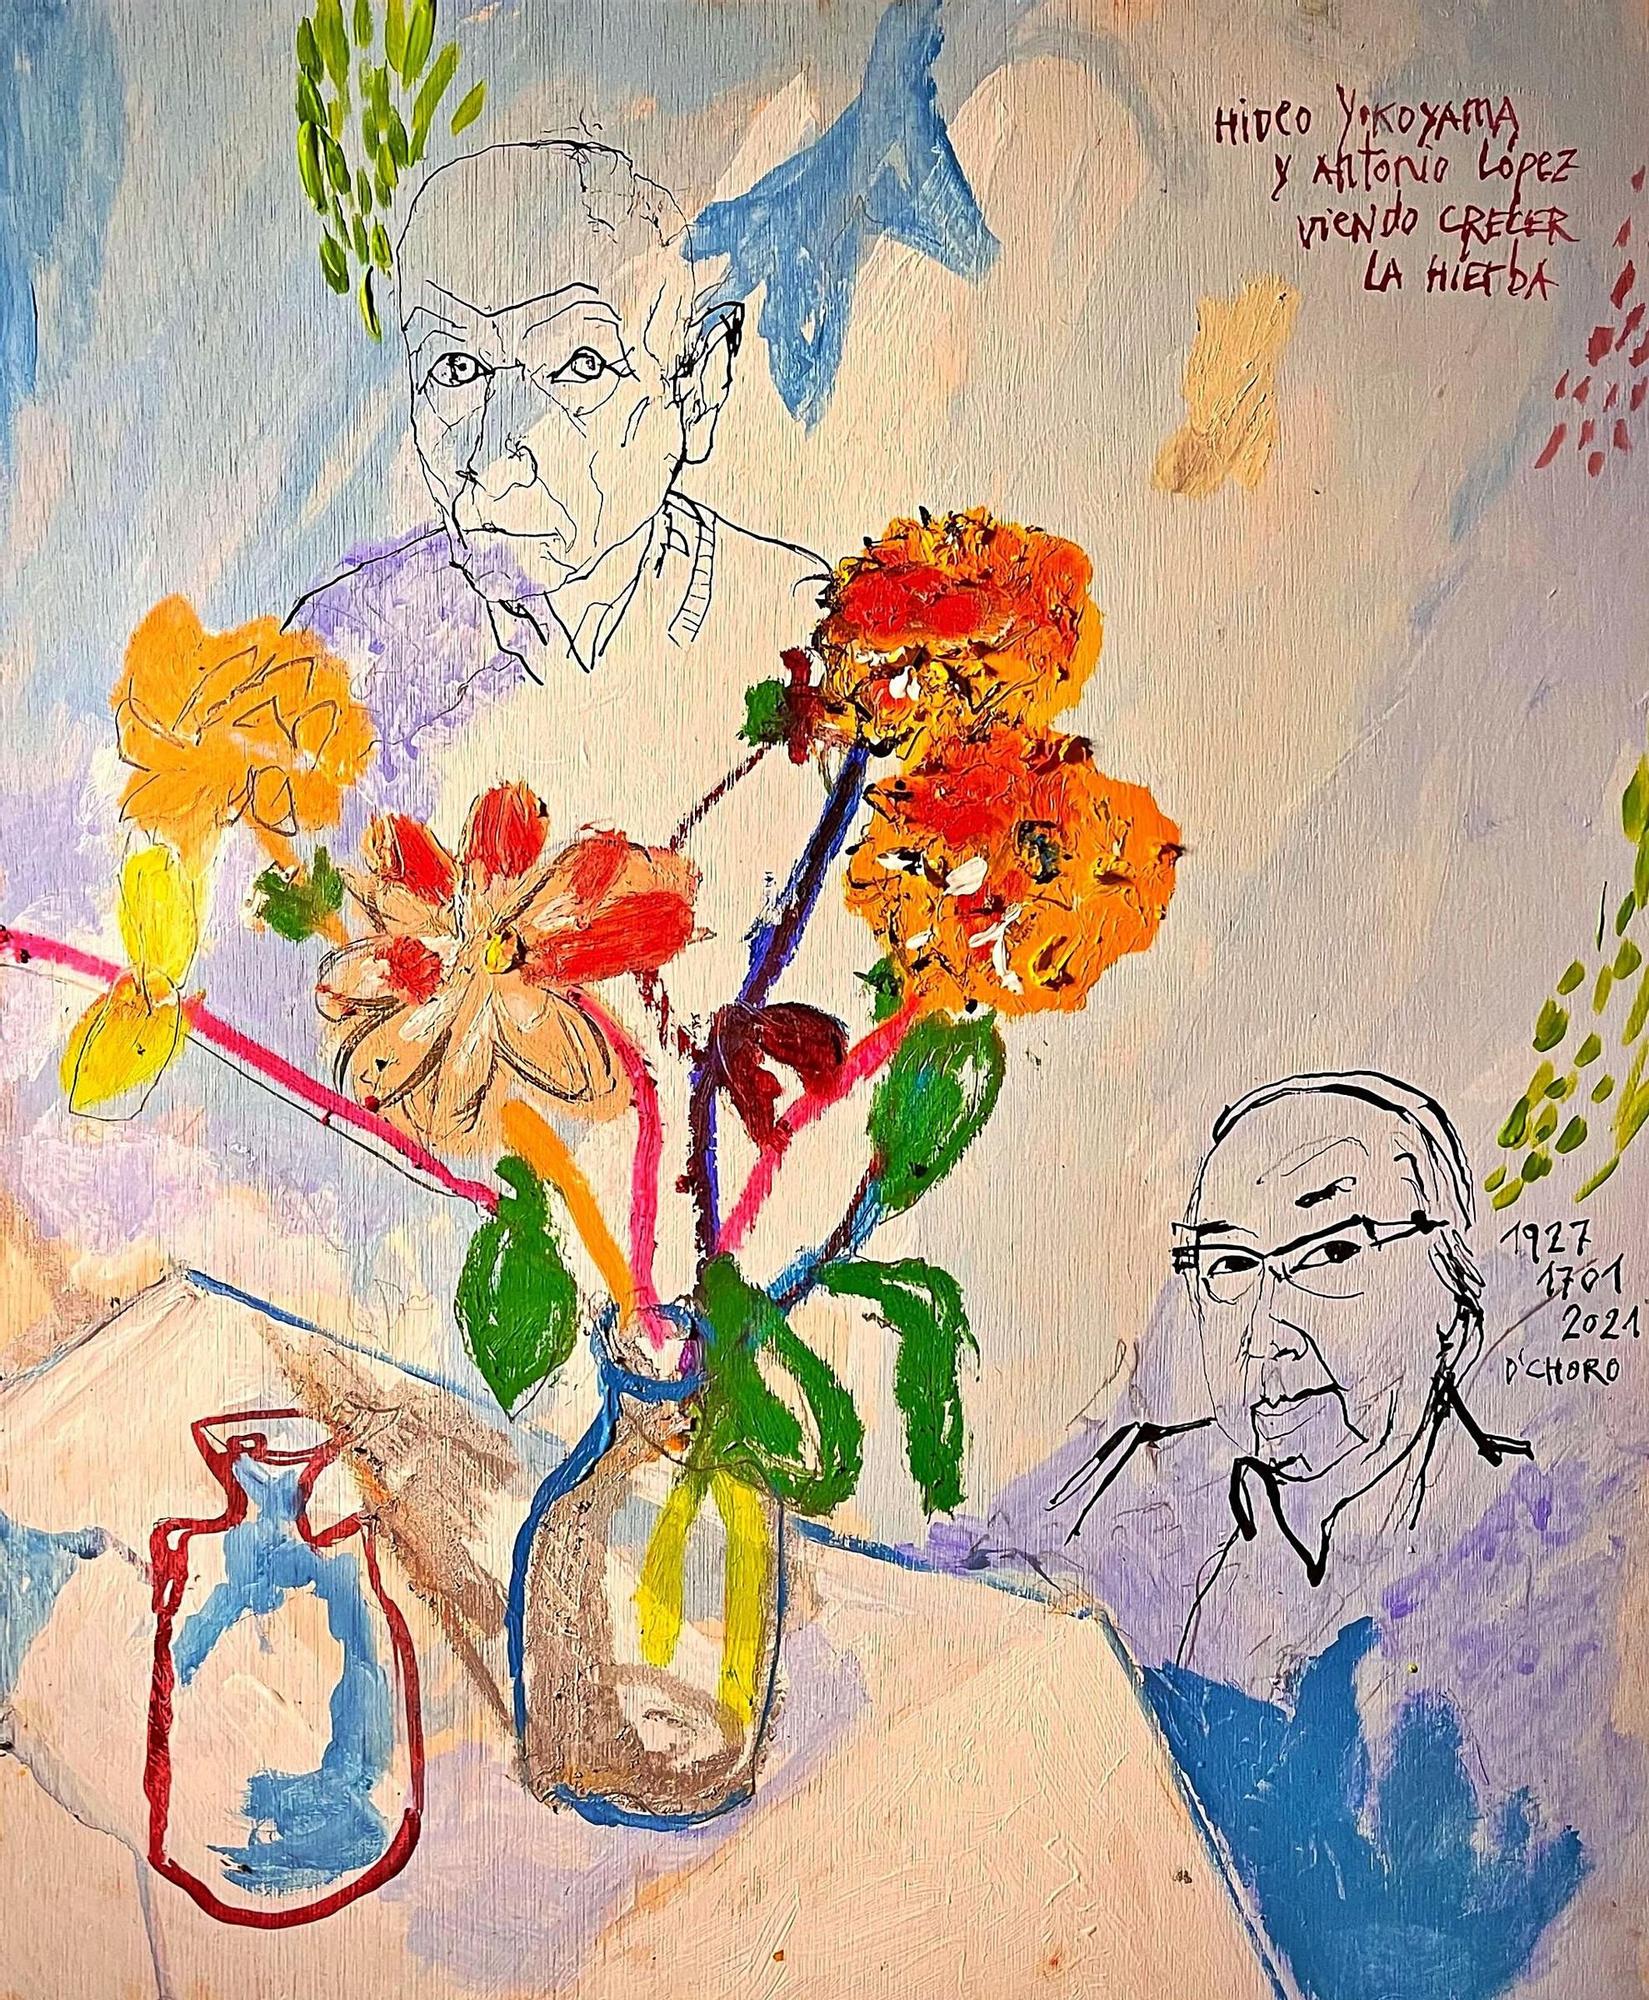 “Antonio López e Hideo Yokoyama viendo crecer la hierba” (acrílico, tinta china y oil stick sobre madera) por O`Choro